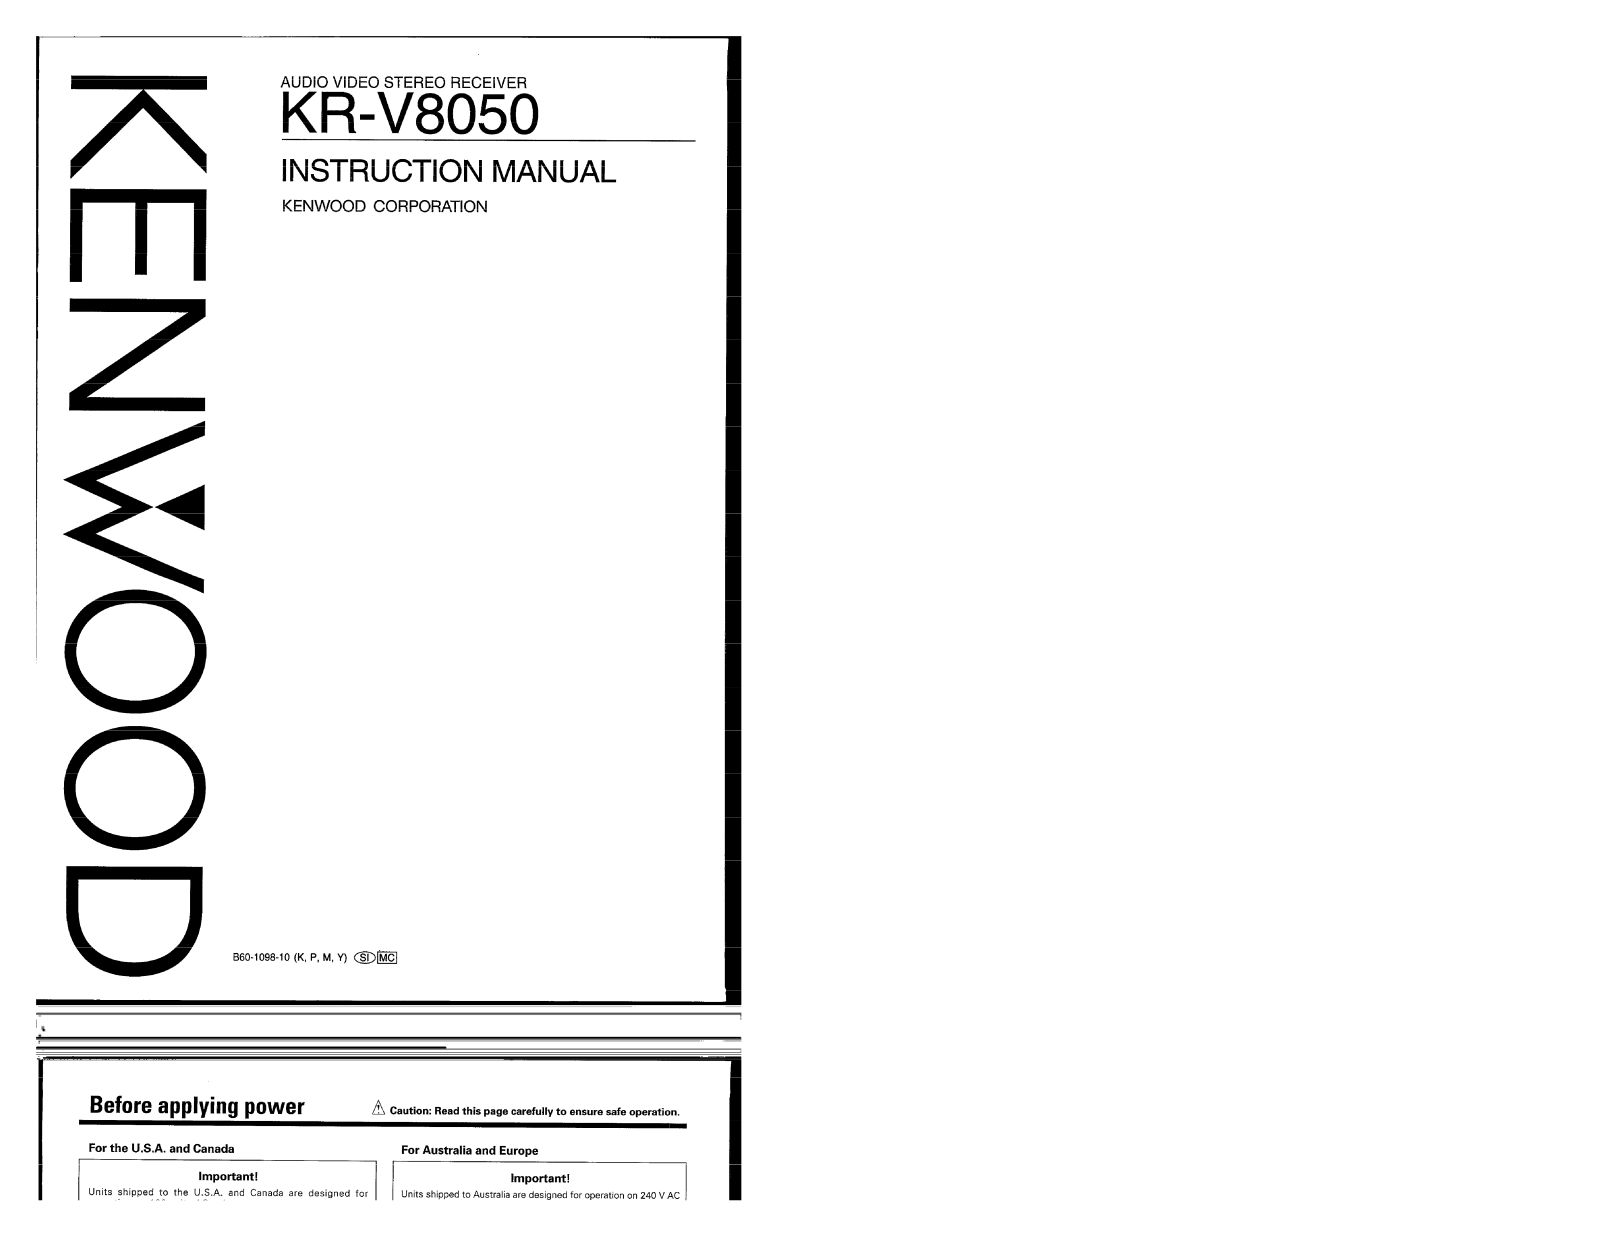 Kenwood KR-V8050 Owner's Manual